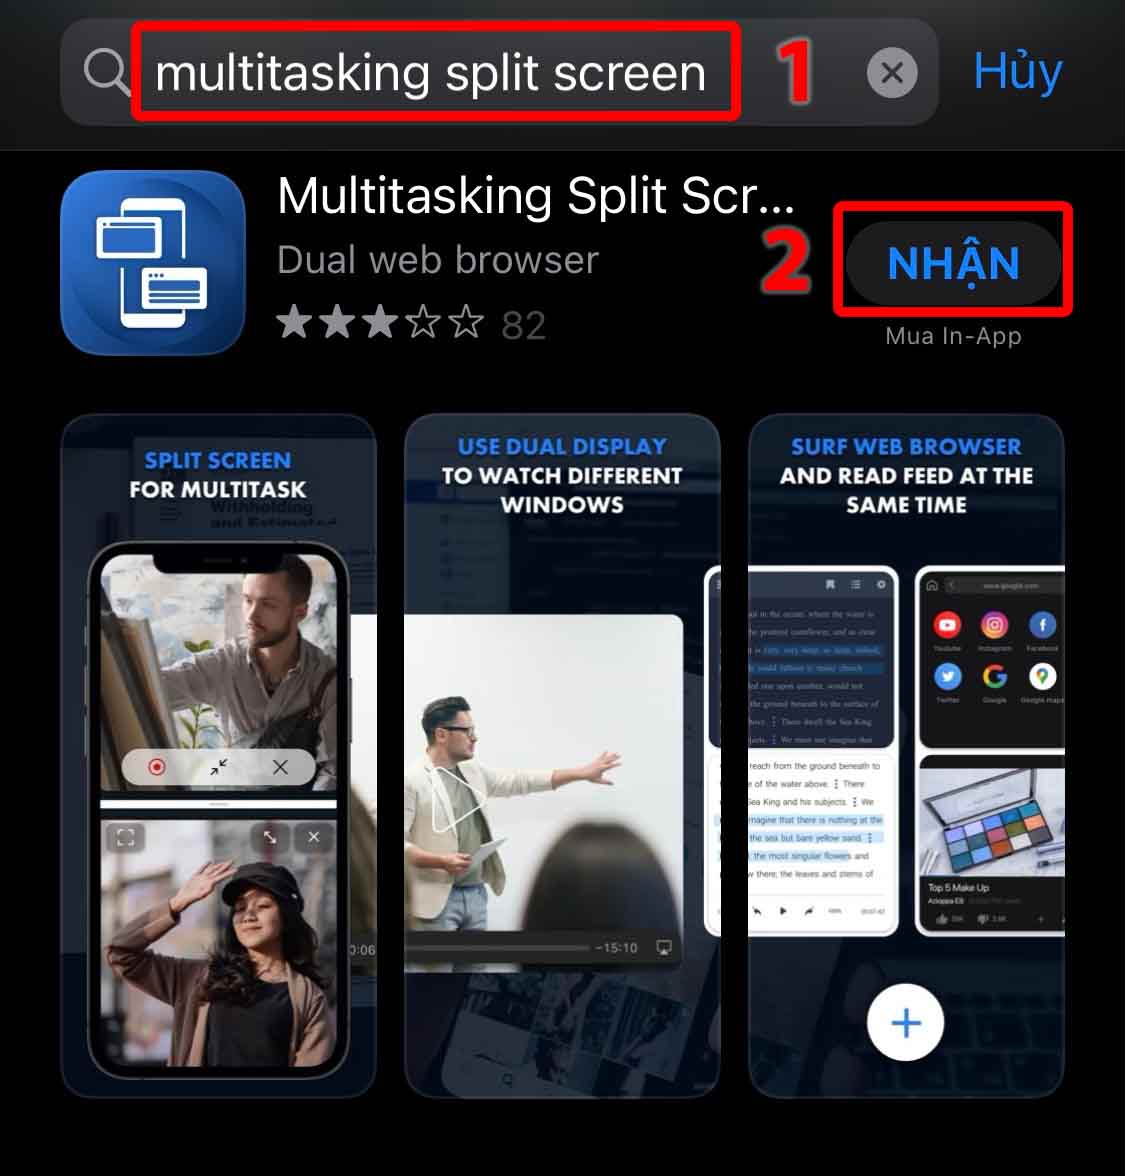 Cai dat Multitasking Split Screen tu App Store tren iPhone cua ban